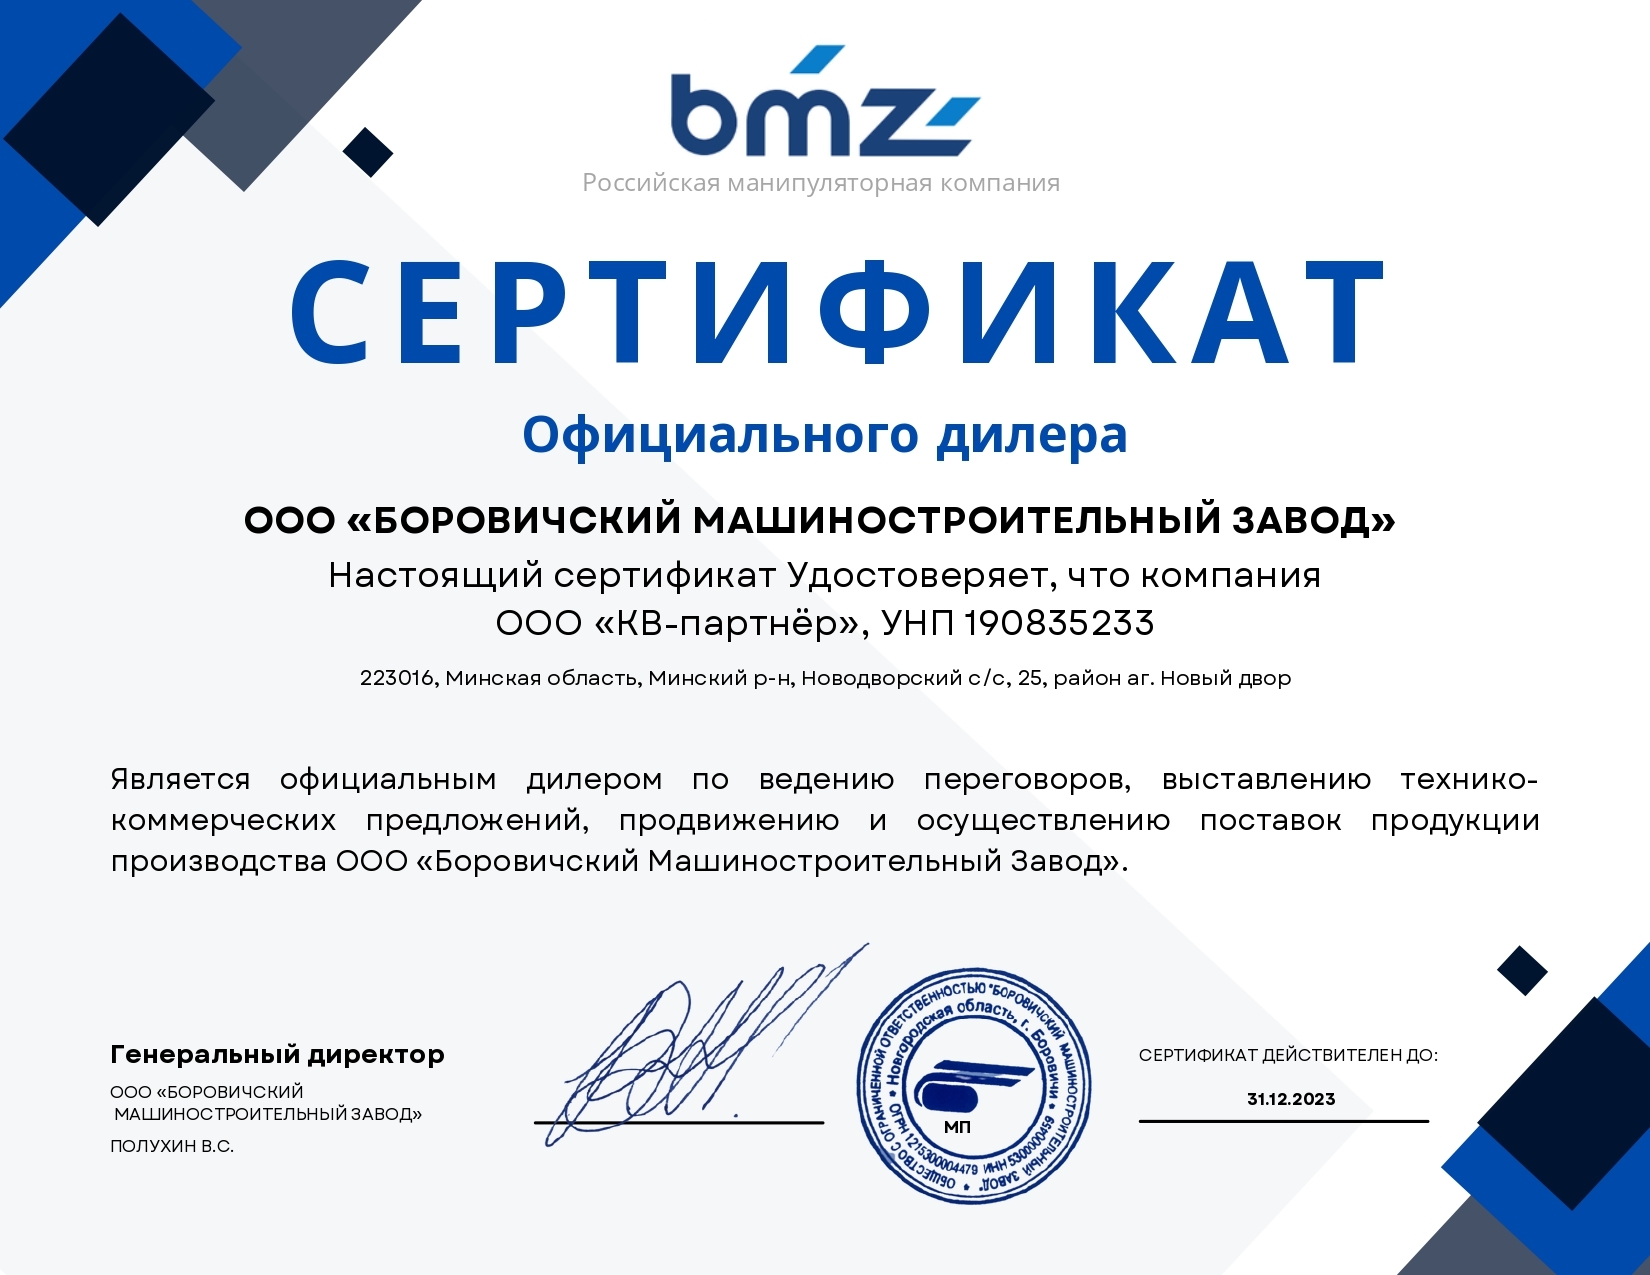 Сертификат дилера КВ-партнёр АО "Боровичский Машиностроительный Завод" ("БОМЗ") в Беларуси